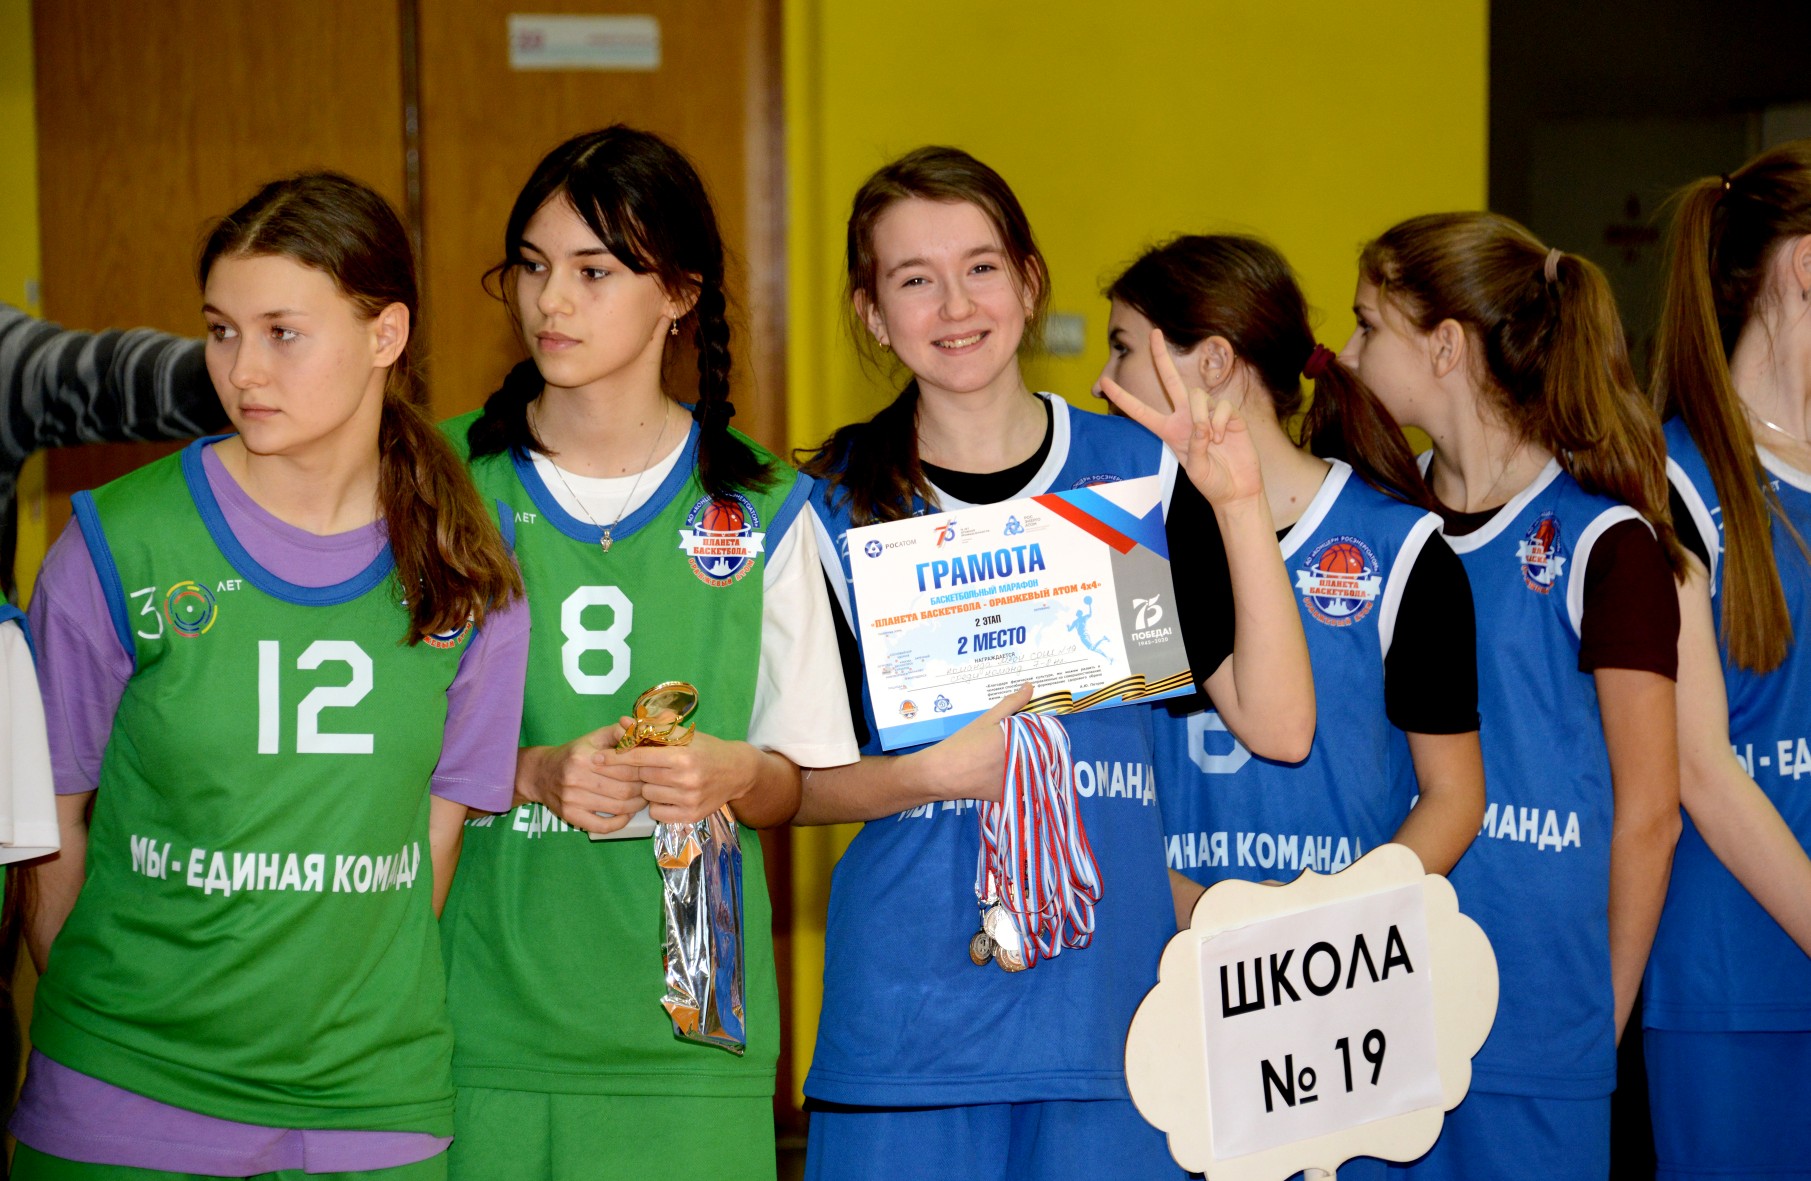 Школьники г. Балаково сразились в финале «атомного» школьного баскетбольного чемпионата 4х4